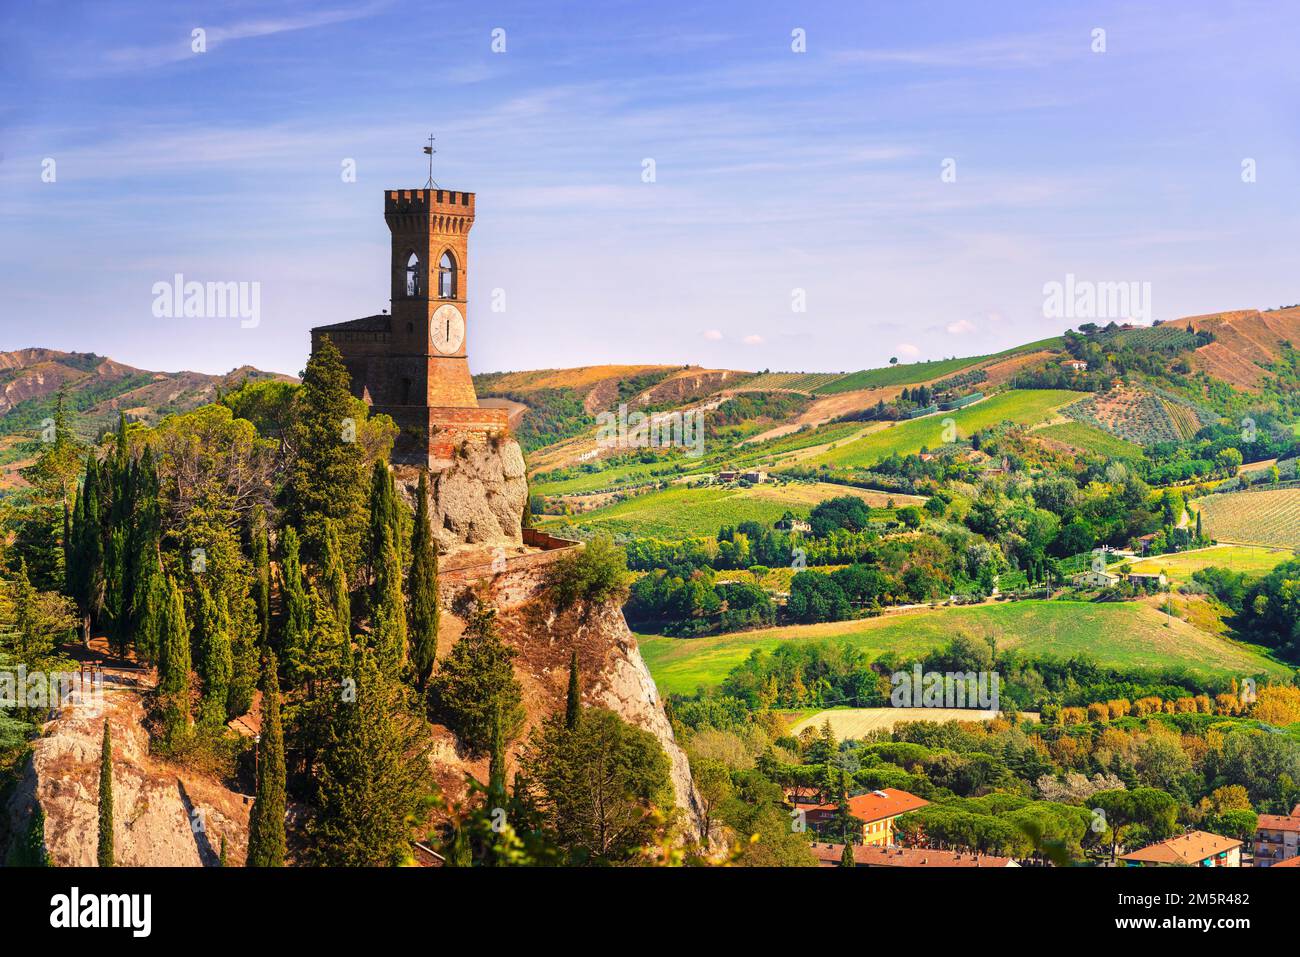 Tour de l'horloge historique de Brisighella sur la falaise. Cette architecture 1800s est connue sous le nom de Torre dell'Orologio. Province de Ravenne, région Émilie-Romagne, Banque D'Images